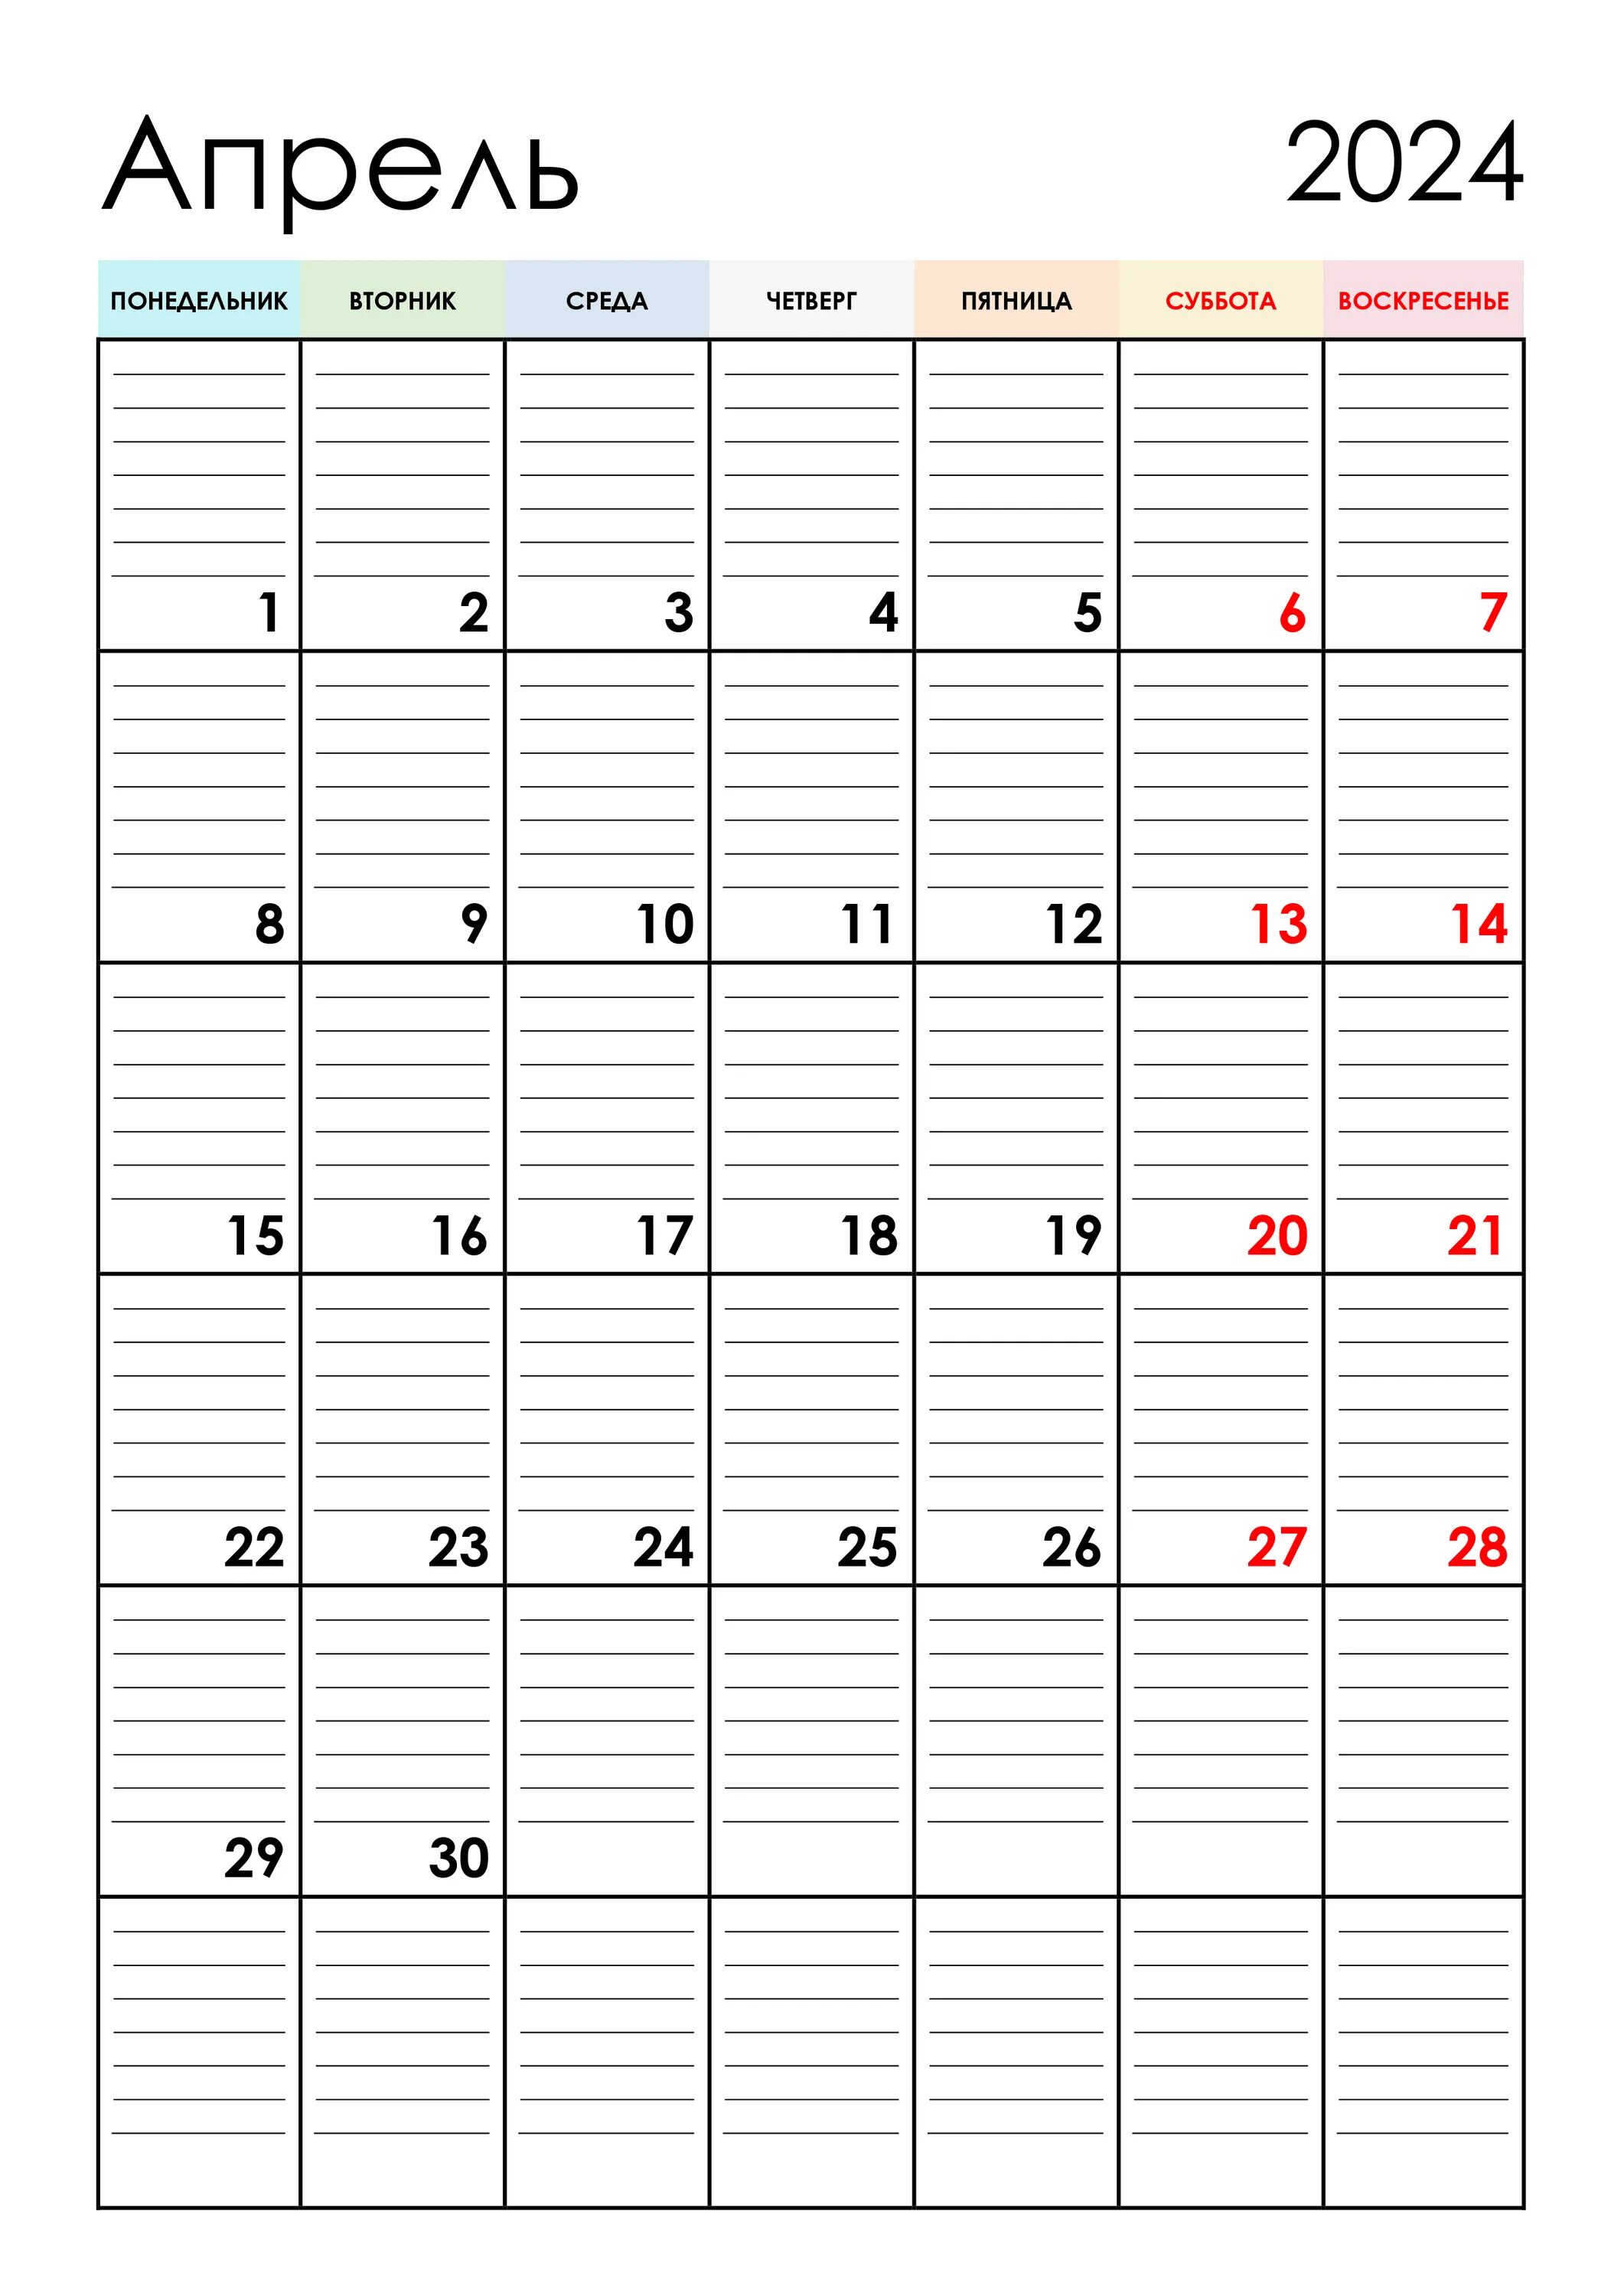 Календарь декабрь 2024 года. Календарь планер август 2023. Календарь планер на декабрь 2022 год. Календарь планер май июнь 2023. Календарь планер на июнь 2023 года.